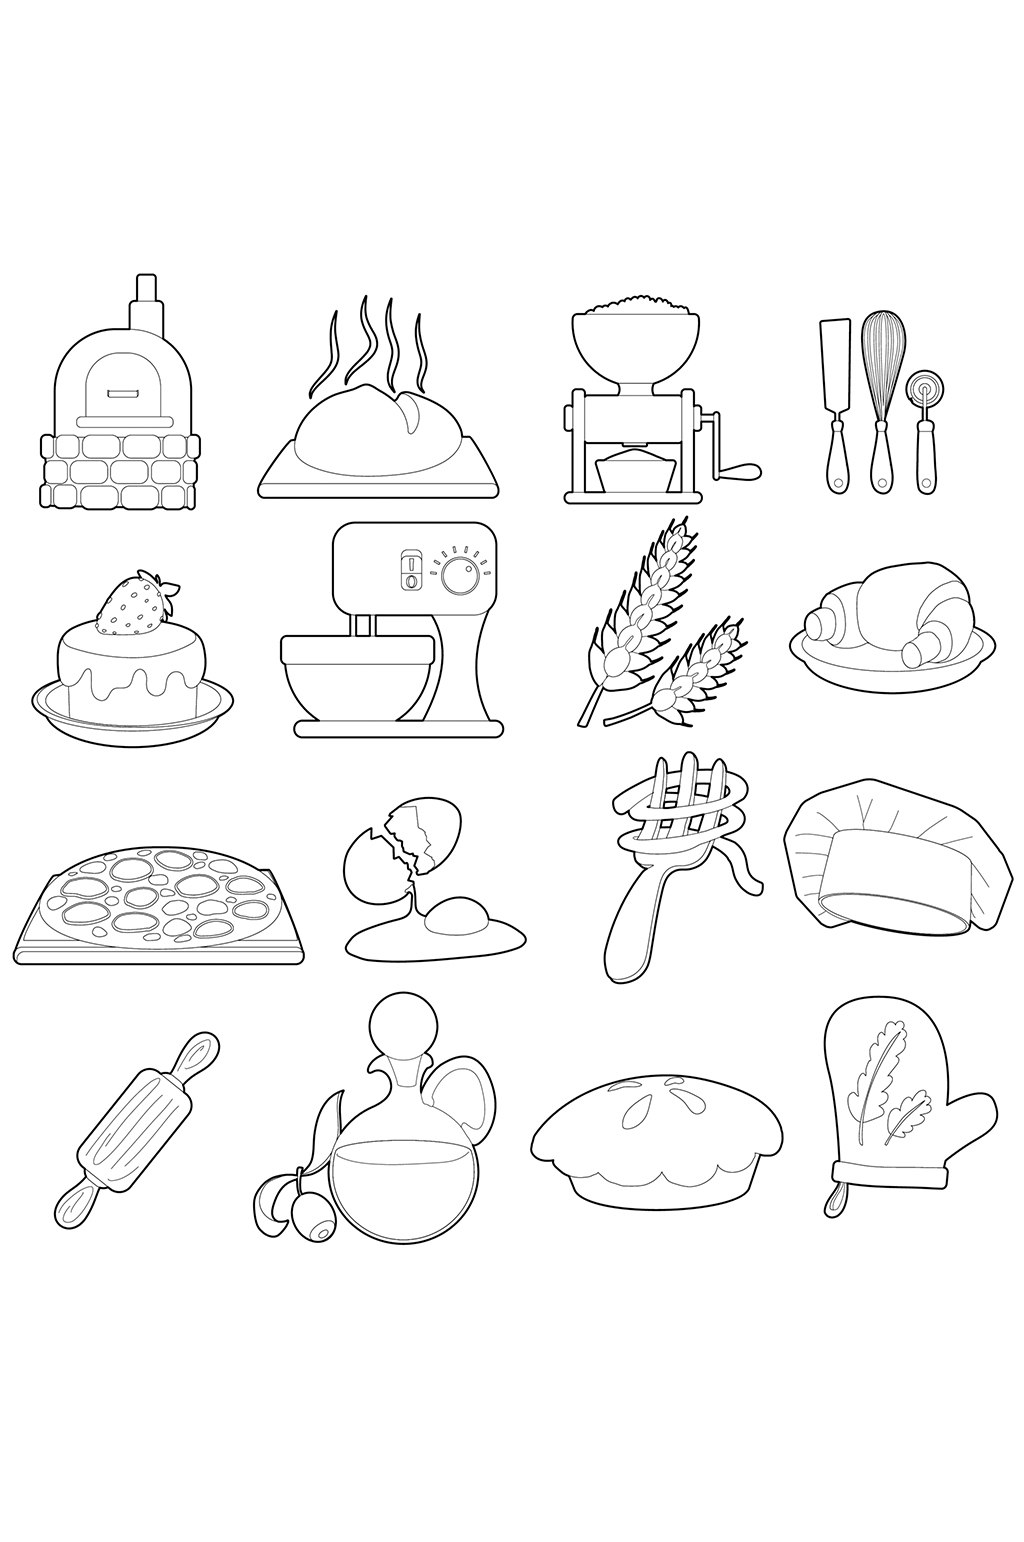 面包店生产图标设置概述16个面包店